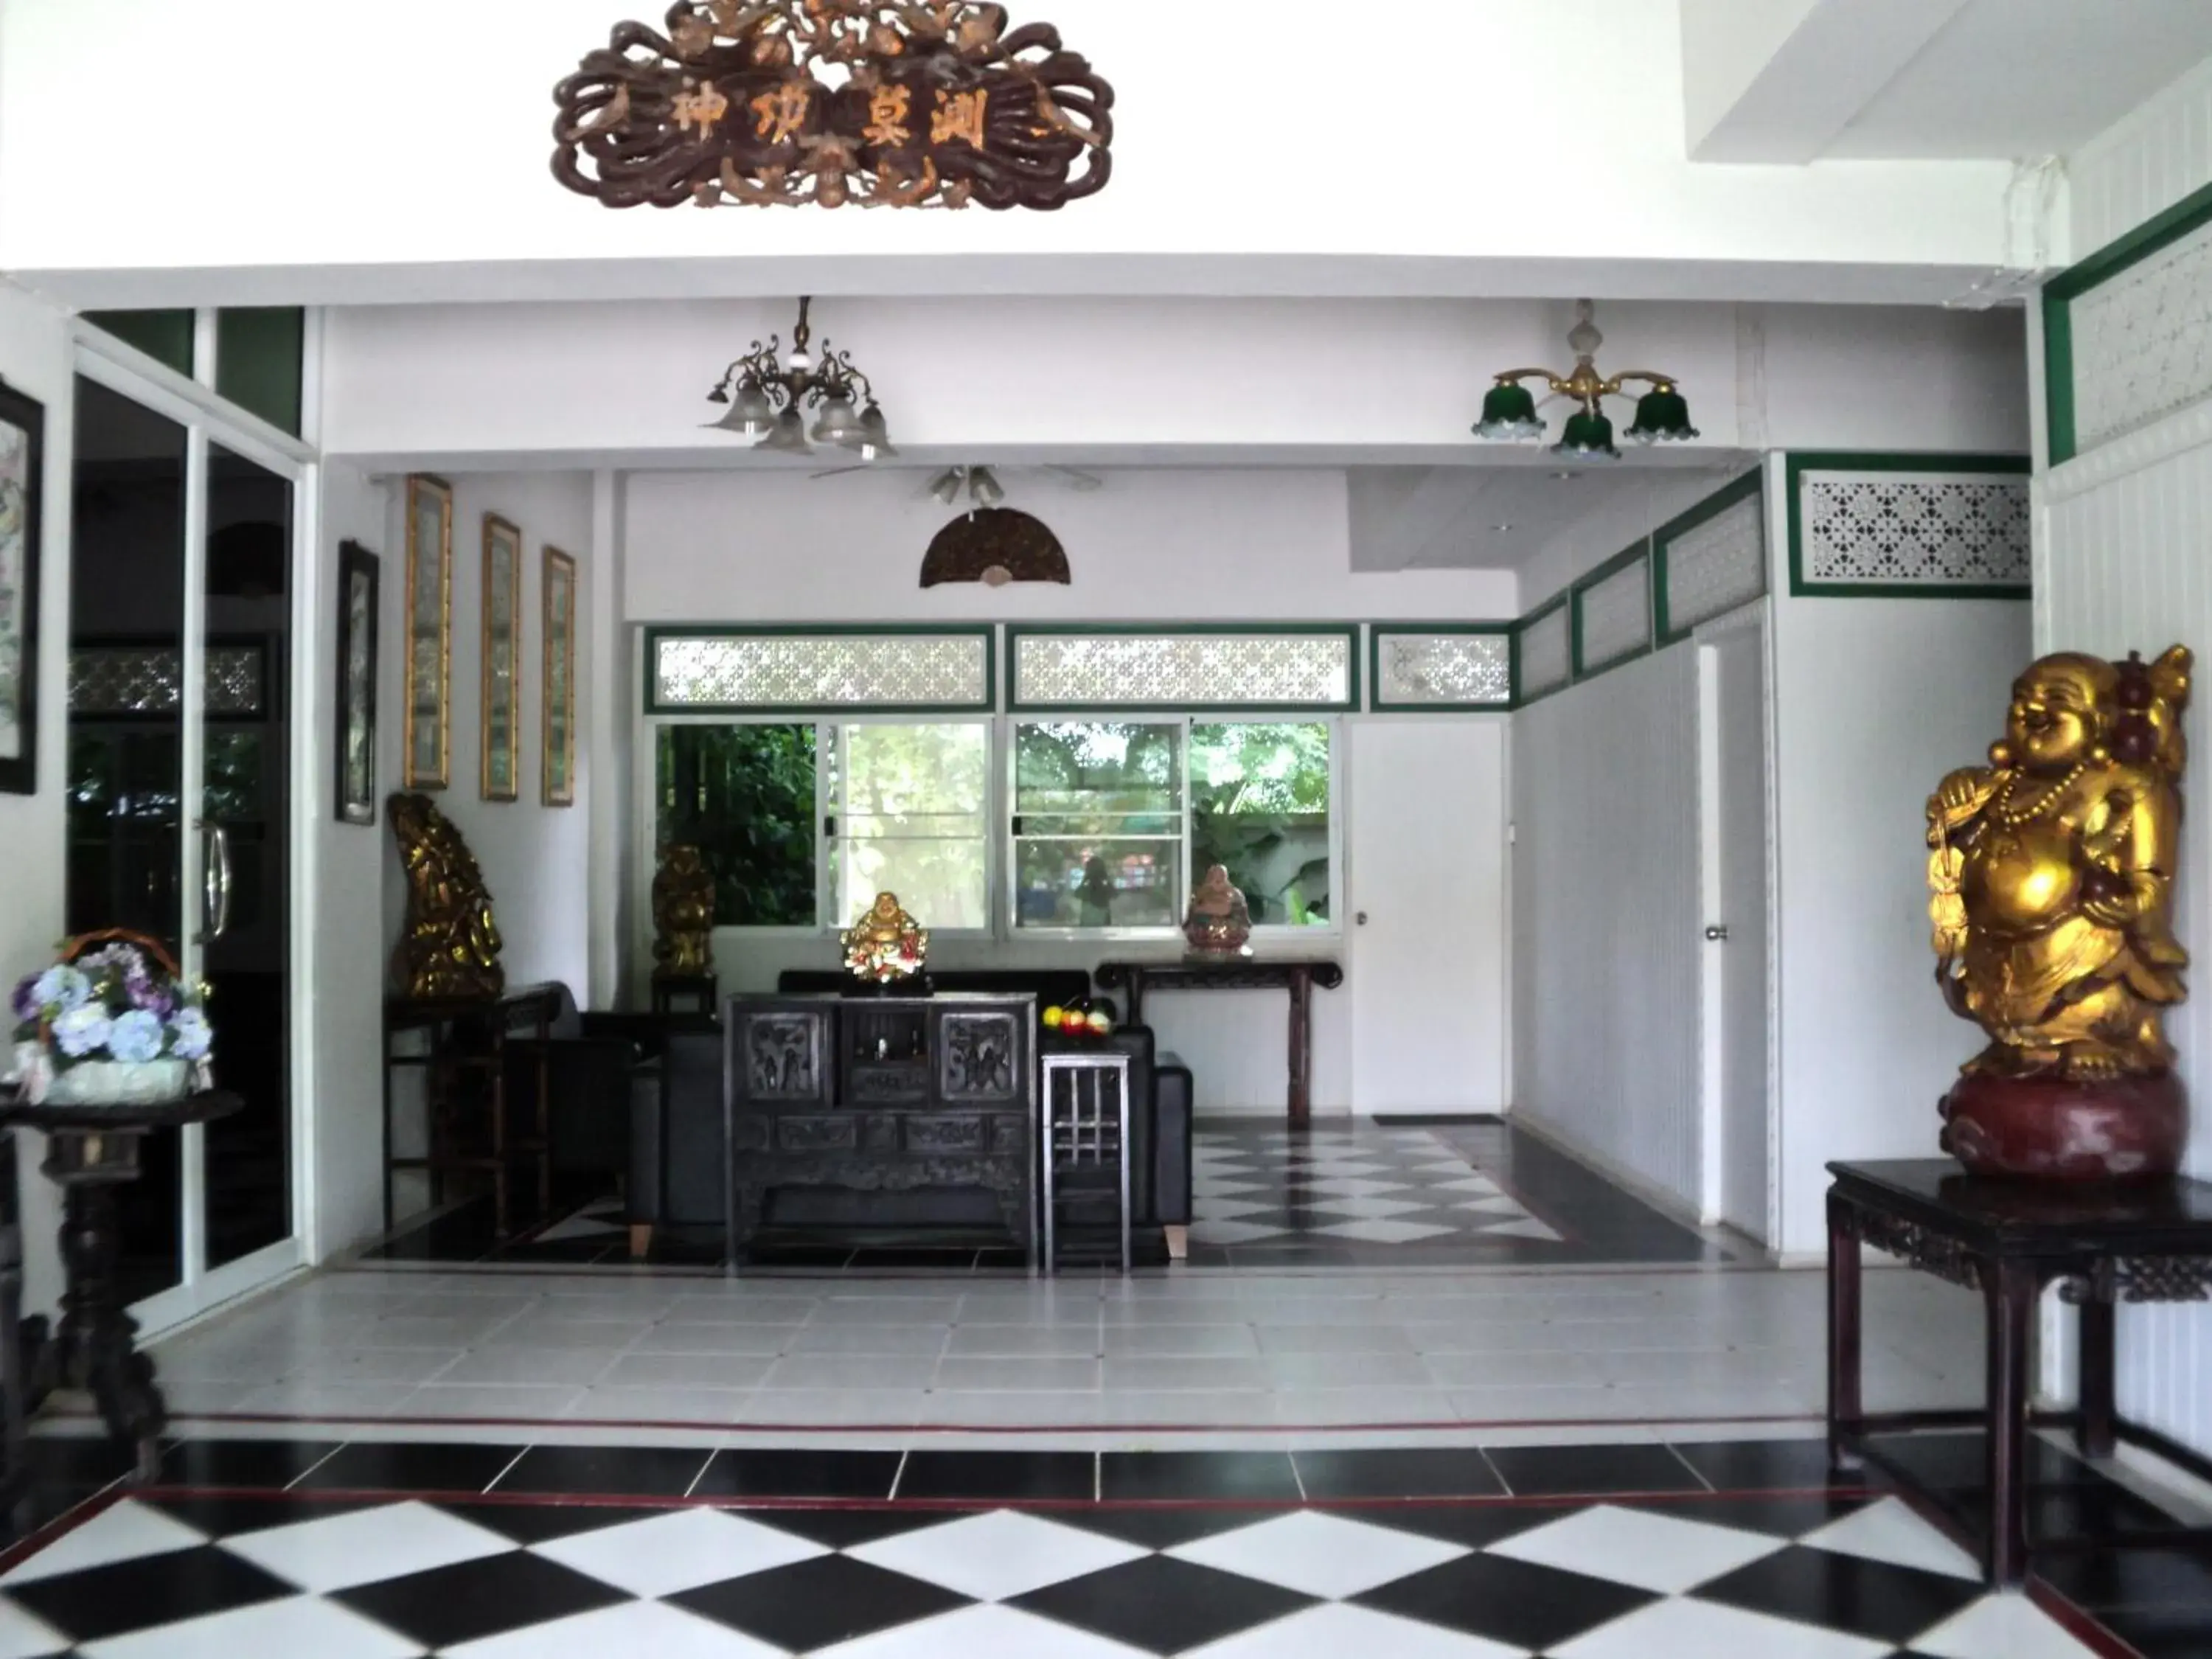 Lobby or reception in Chomdao Hotel